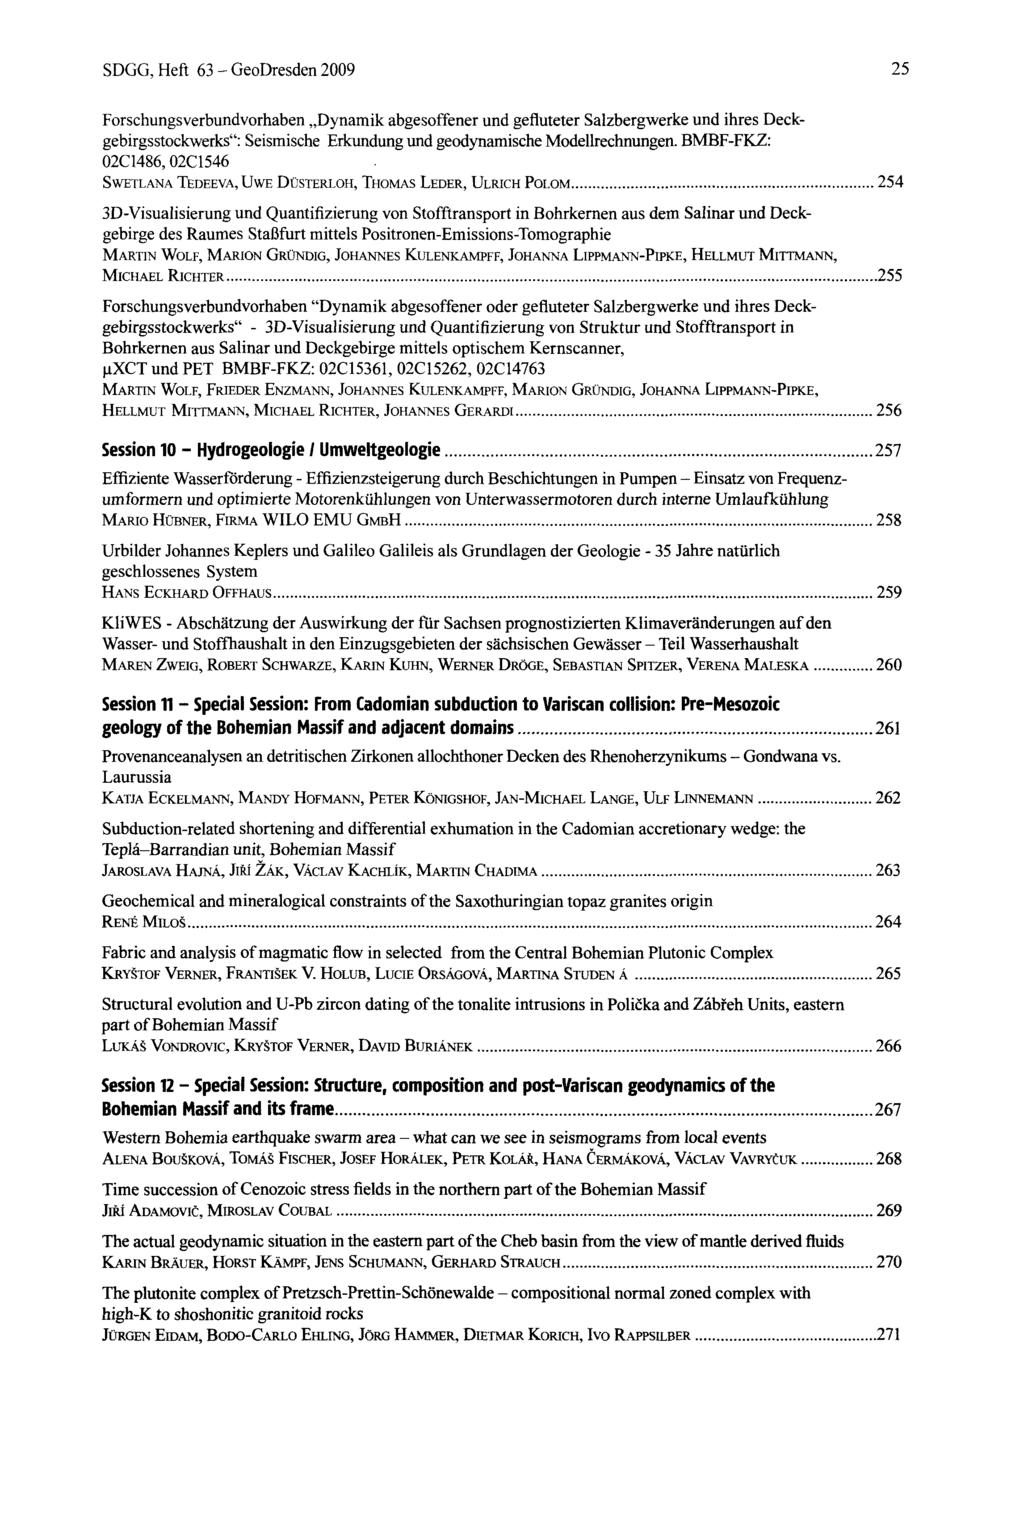 SDGG, Heft 63 - GeoDresden 2009 25 Forschungsverbundvorhaben Dynamik abgesoffener und gefluteter Salzbergwerke und ihres Deckgebirgsstockwerks": Seismische Erkundung und geodynamische